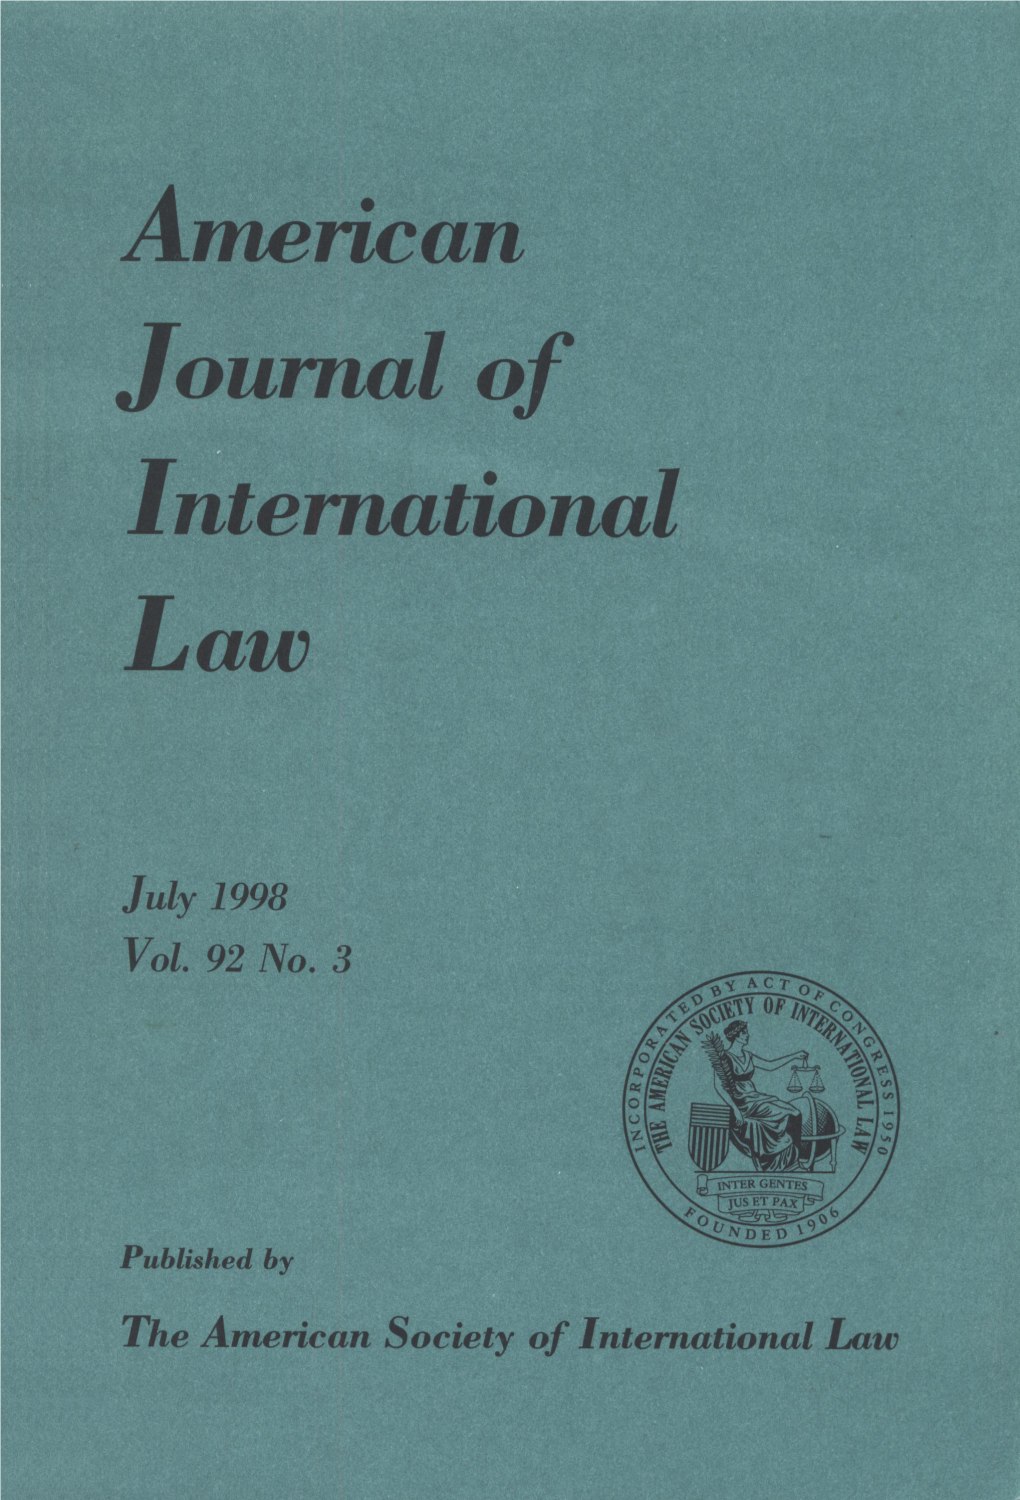 A Mencan Journal of International